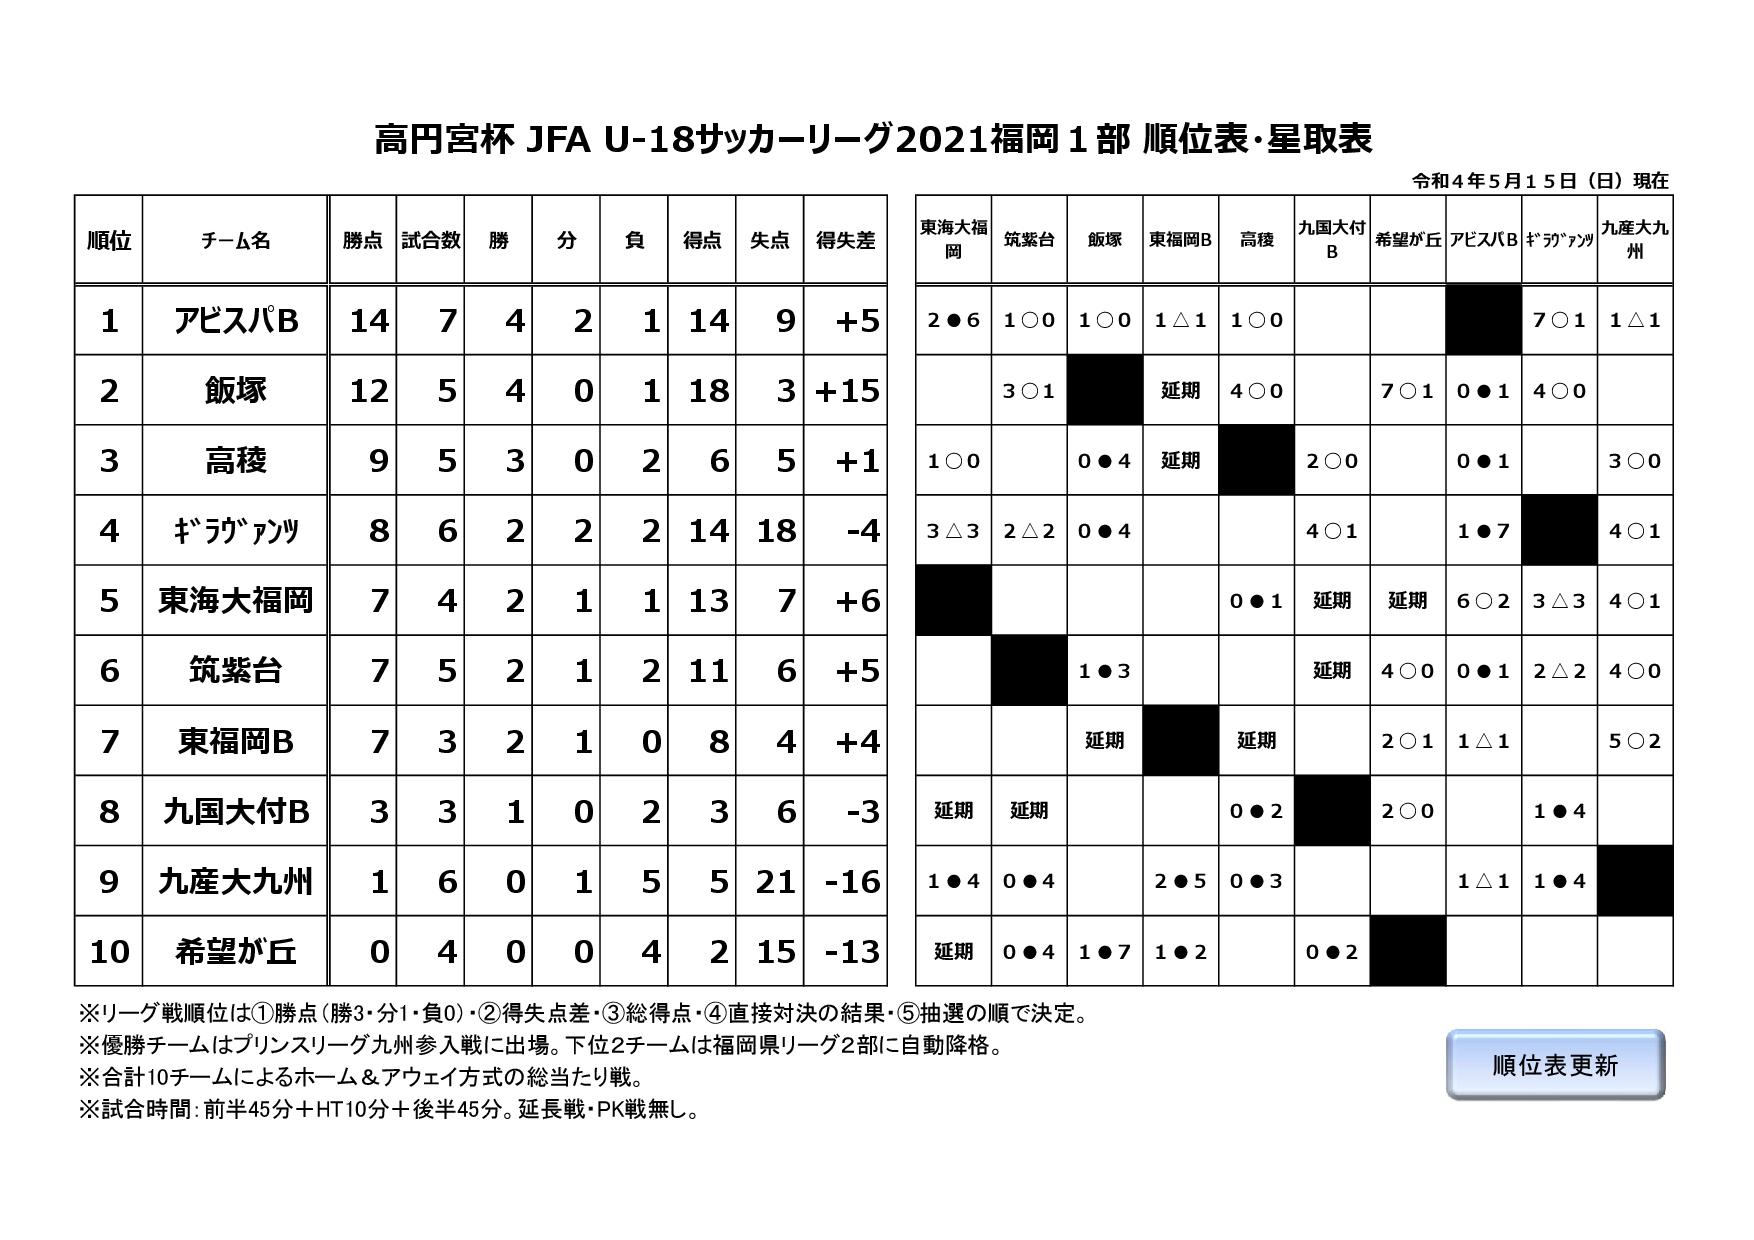 高円宮杯 JFA U-18サッカーリーグ2021福岡１部